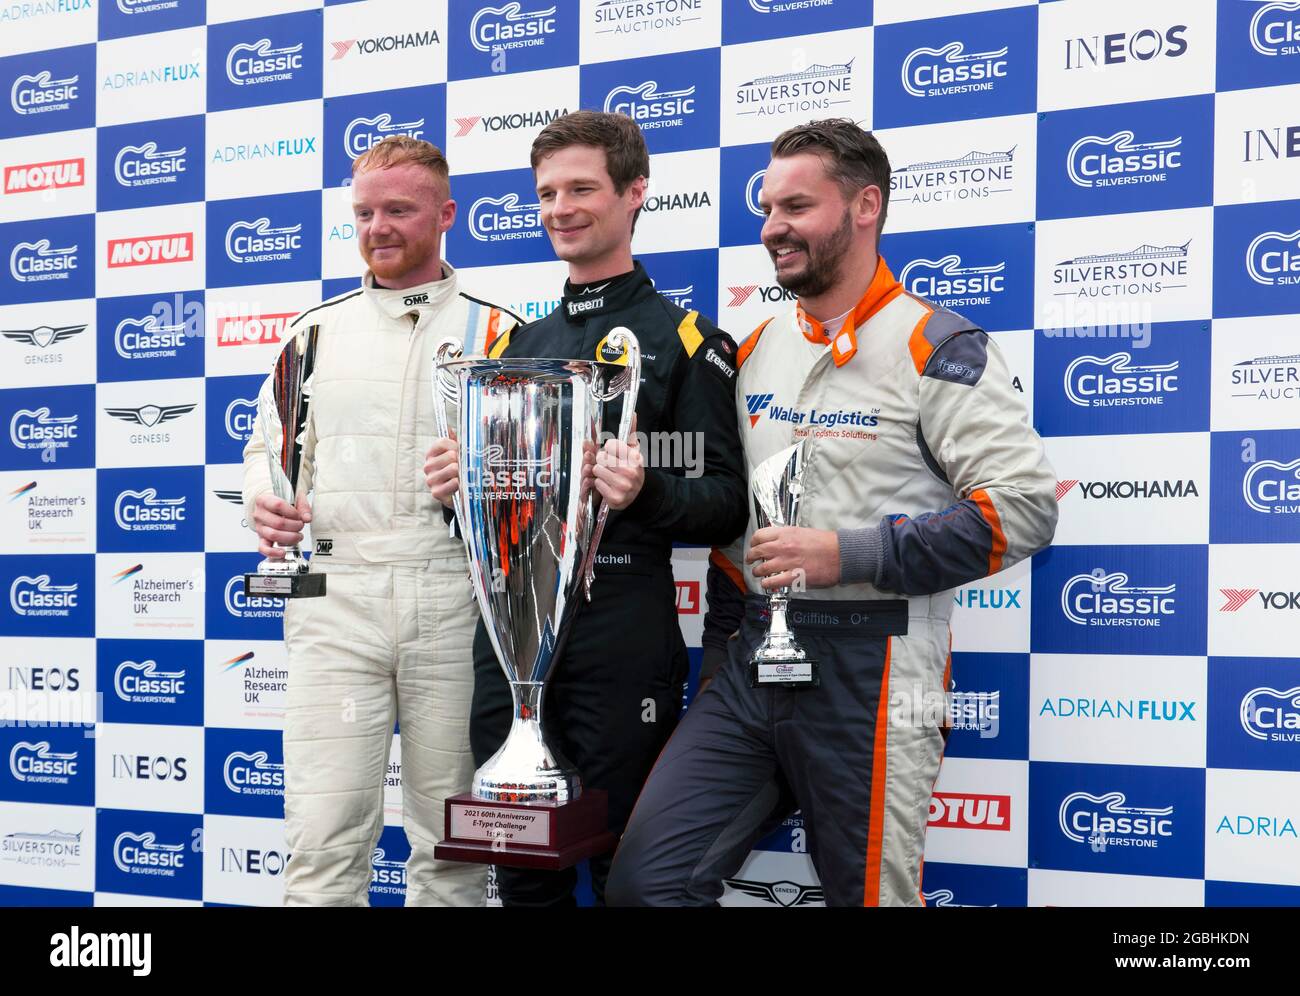 Il podio per i vincitori della e-Type Challenge, al Silverstone Classic 2021, con Jon Minshaw 1°, ben Mitchell 2° e Danny Winstanley 3°, Foto Stock